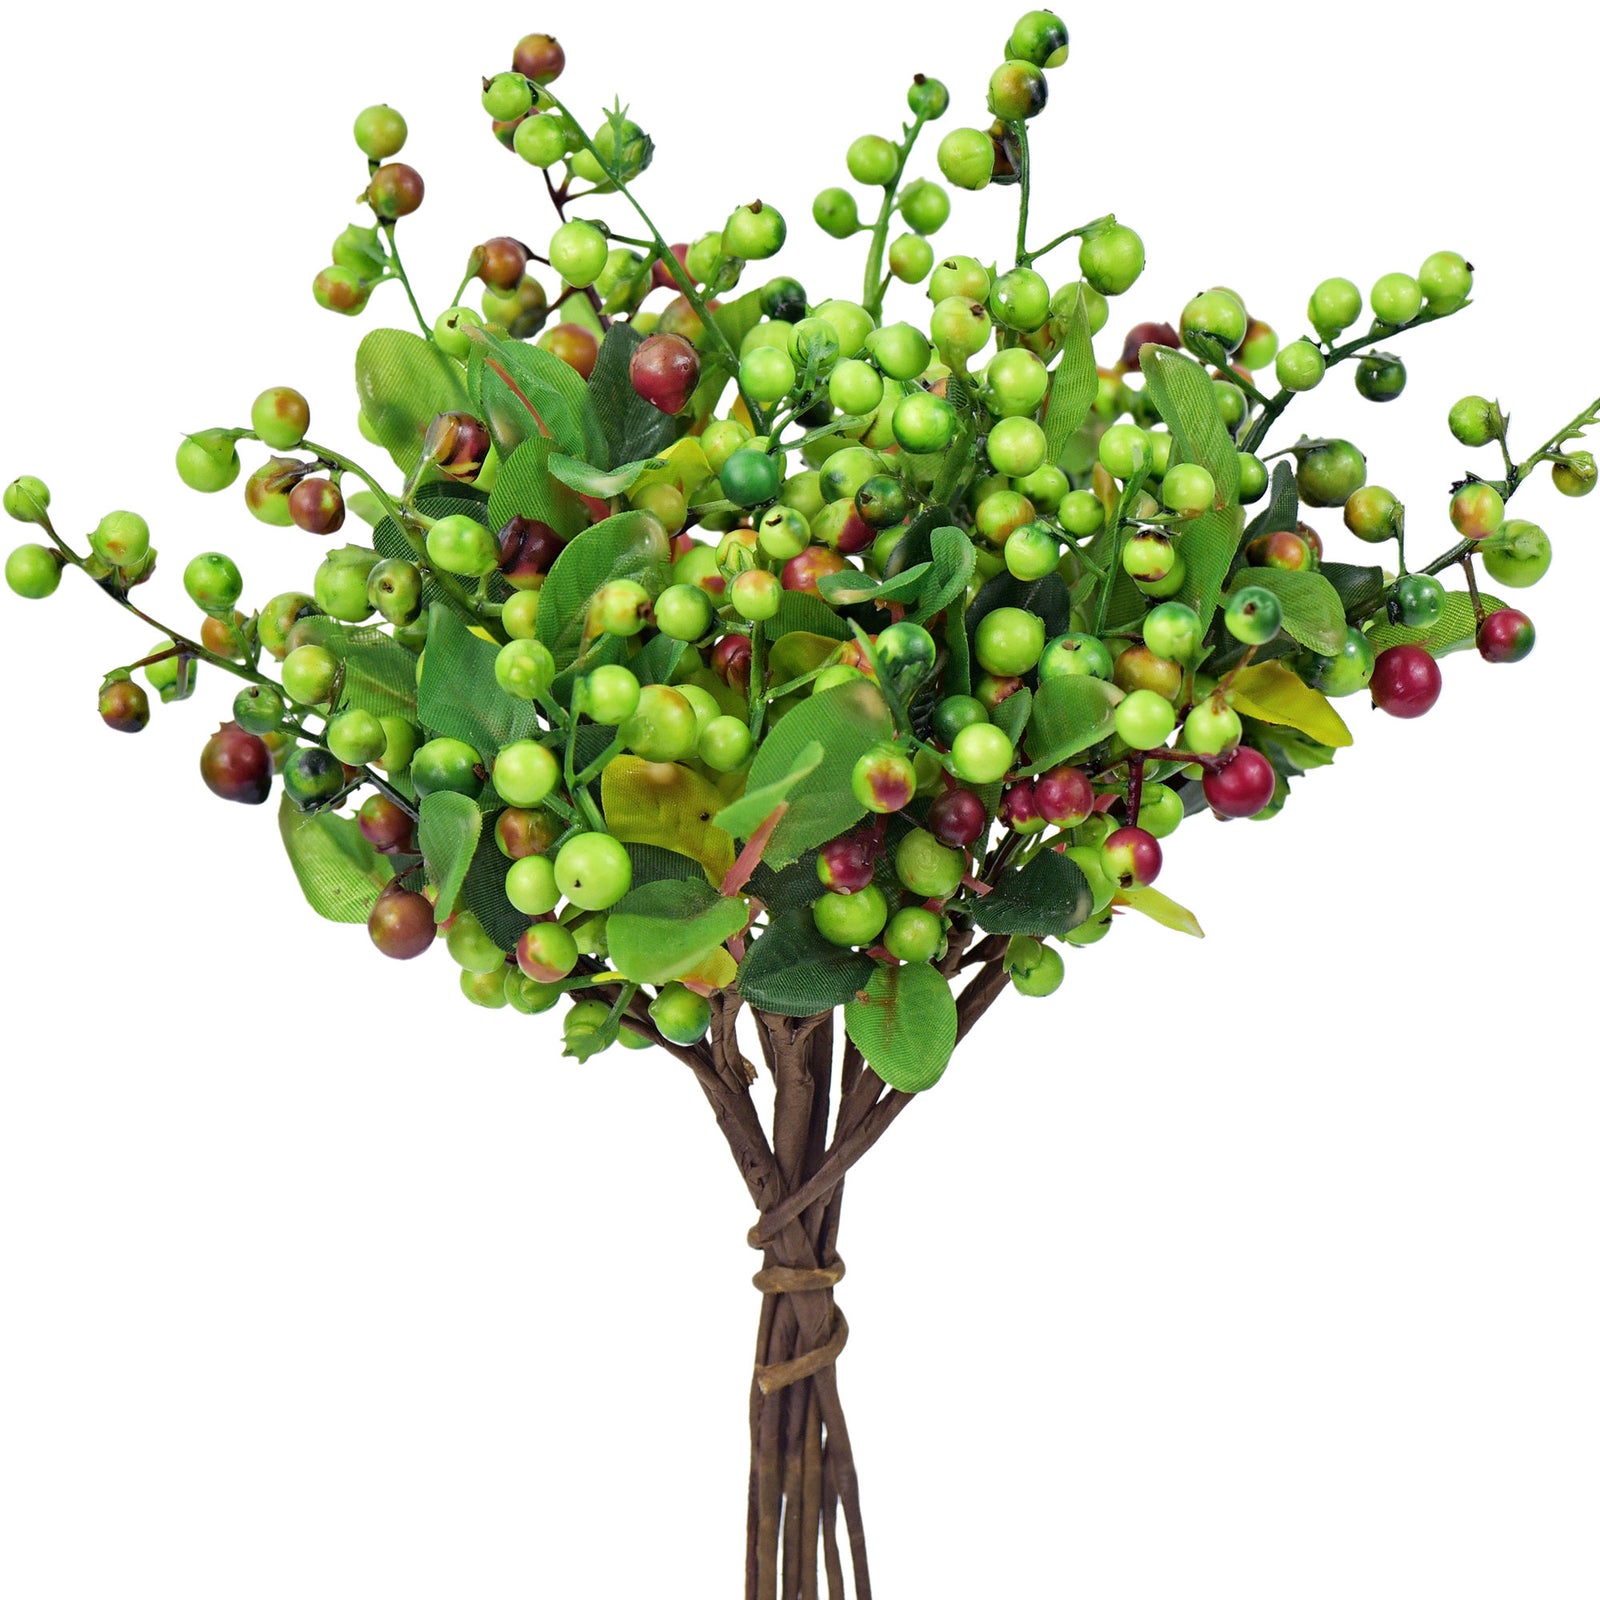 10 Stems Artificial (Green) Berry Bouquet 9.8 Inches (25cm) -FiveSeasonStuff